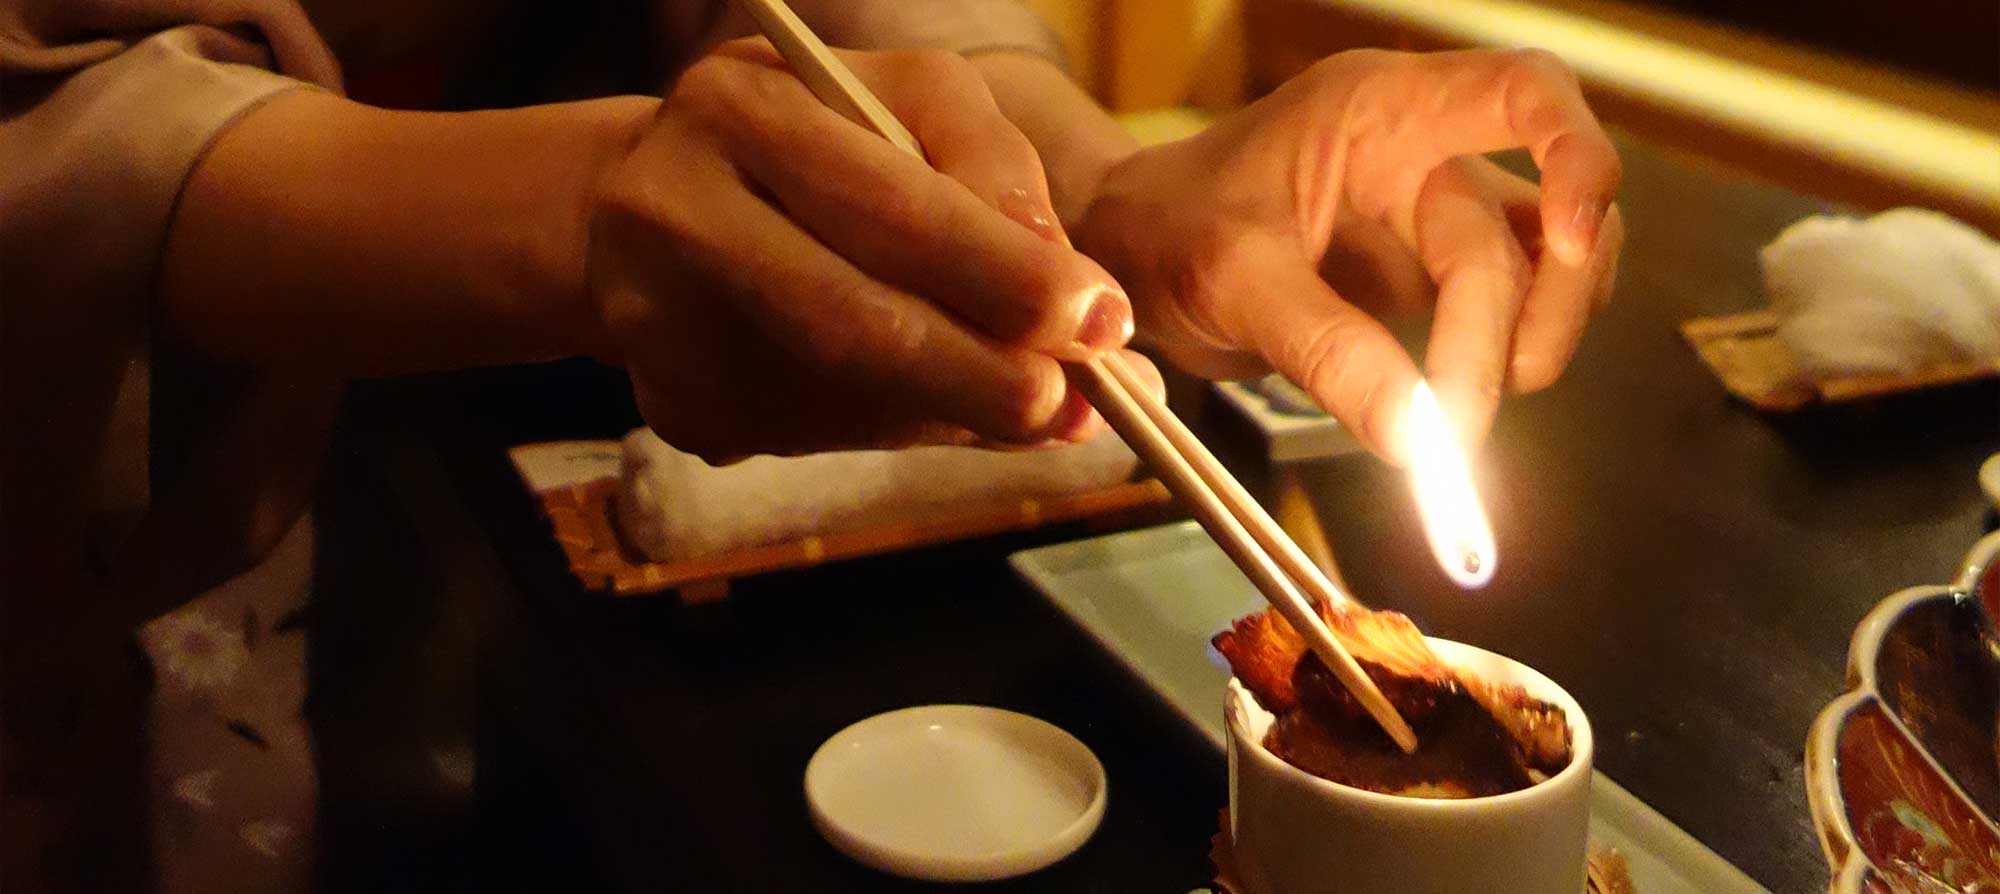 Хозяйка ресторанчика опаляет на огне плавник рыбы фугу и опускает его в плошку с сакэ, чтобы приготовить фугу-хикэ-дзакэ